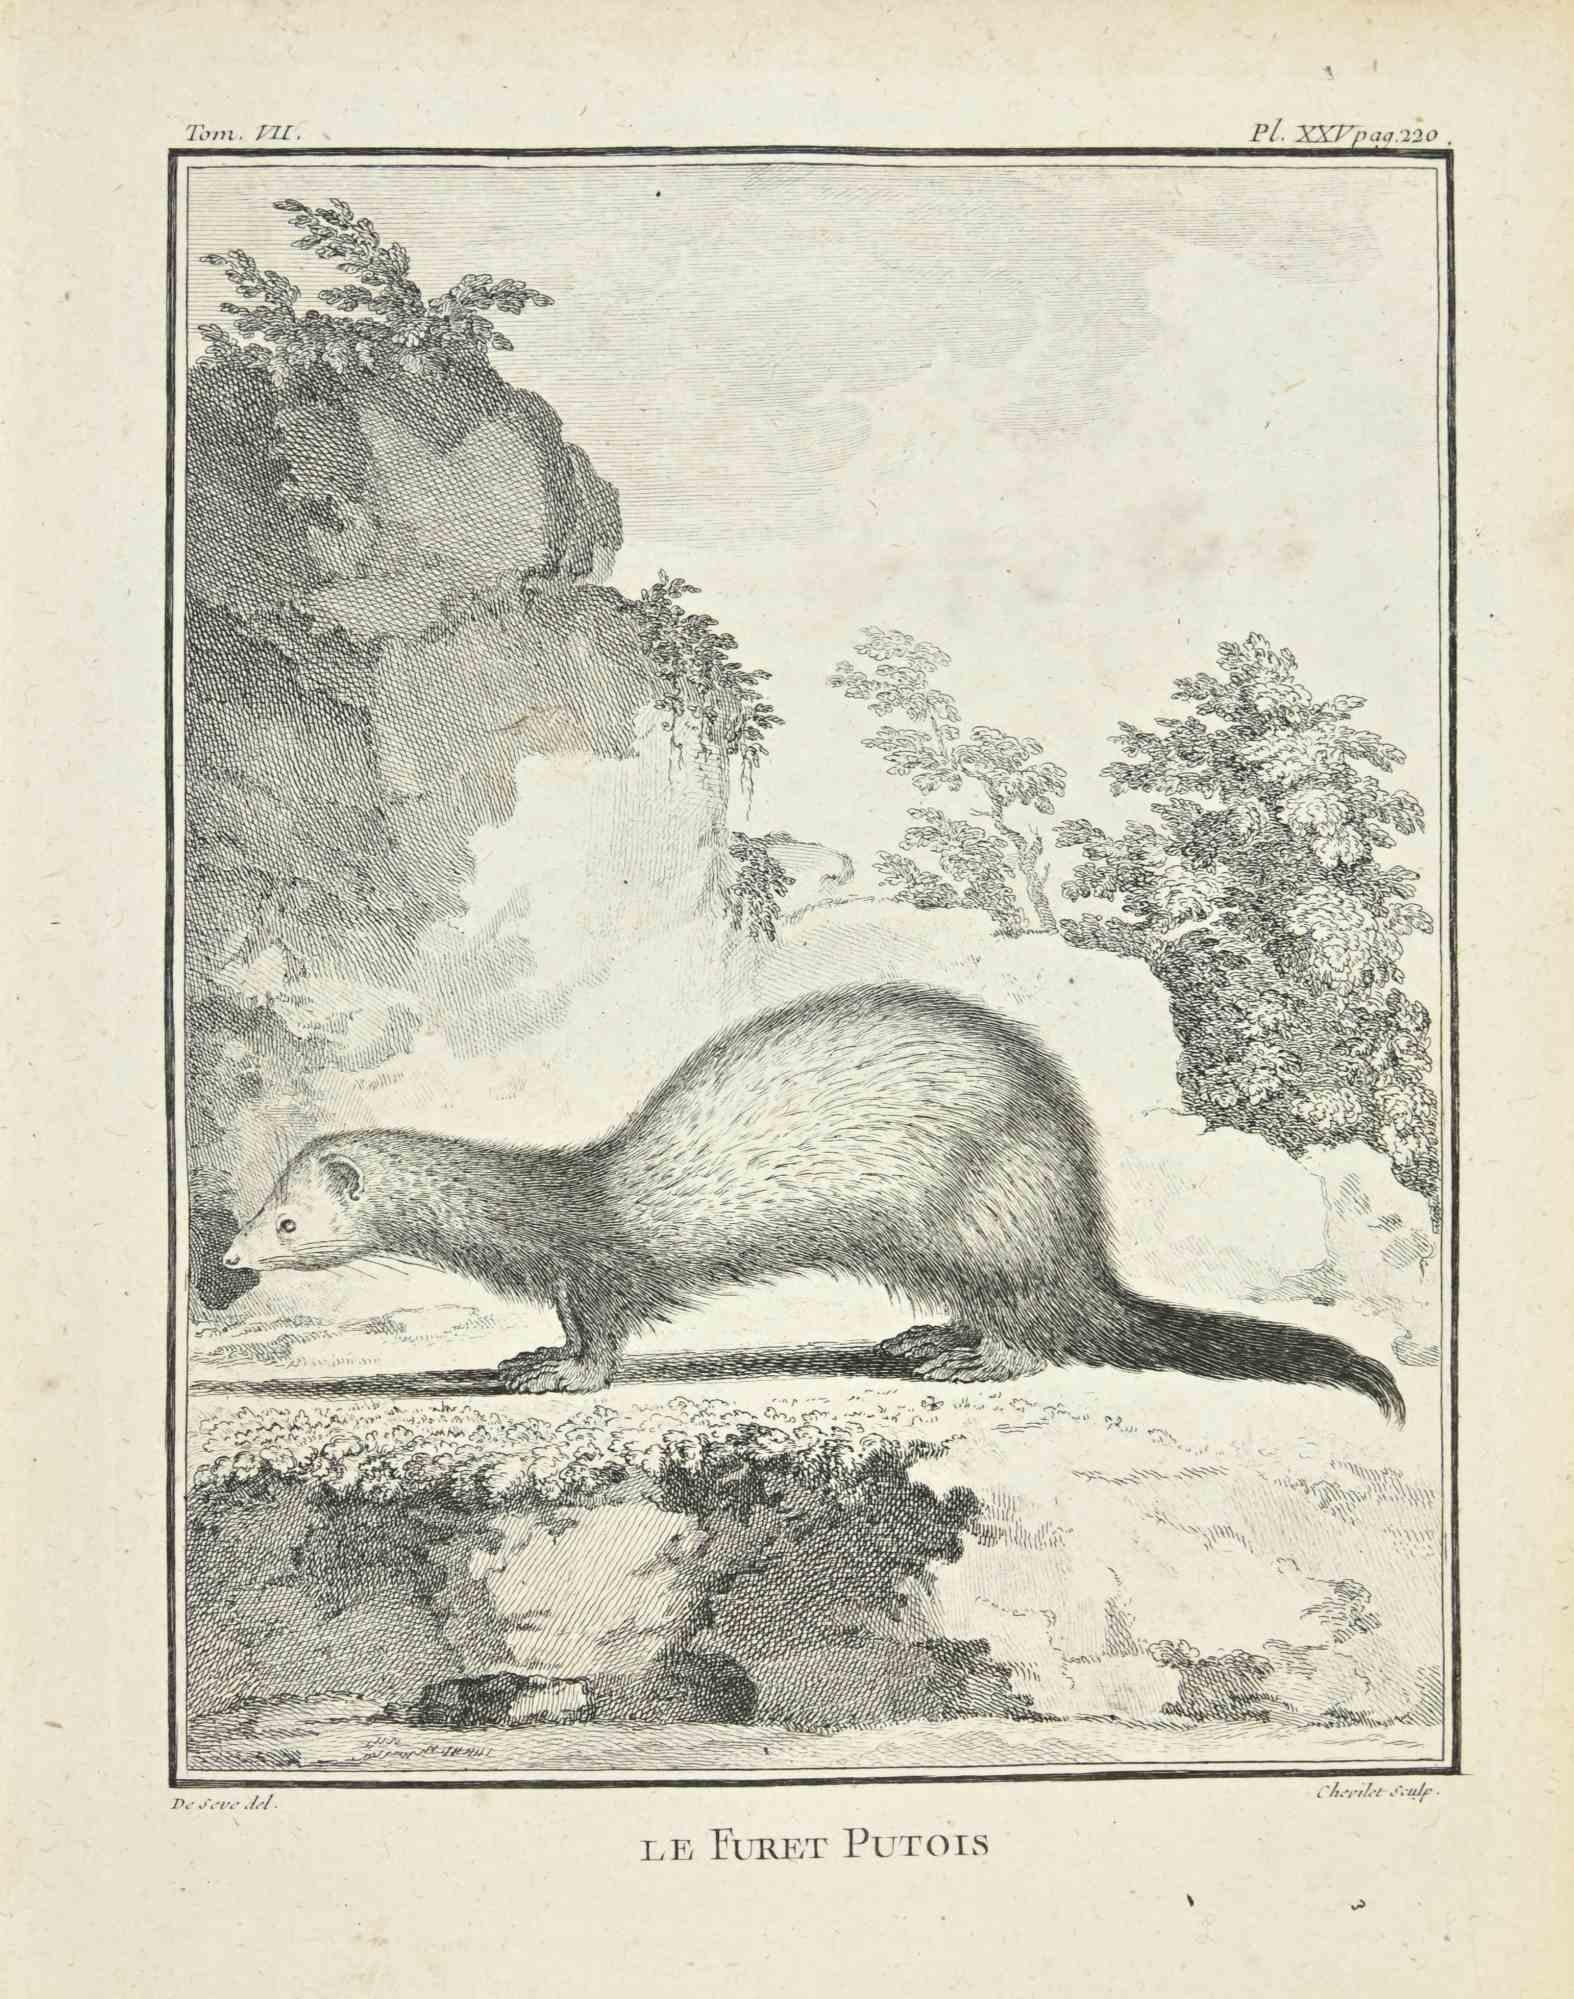 Le Furet Putois - Etching by Juste Chevillet - 1771